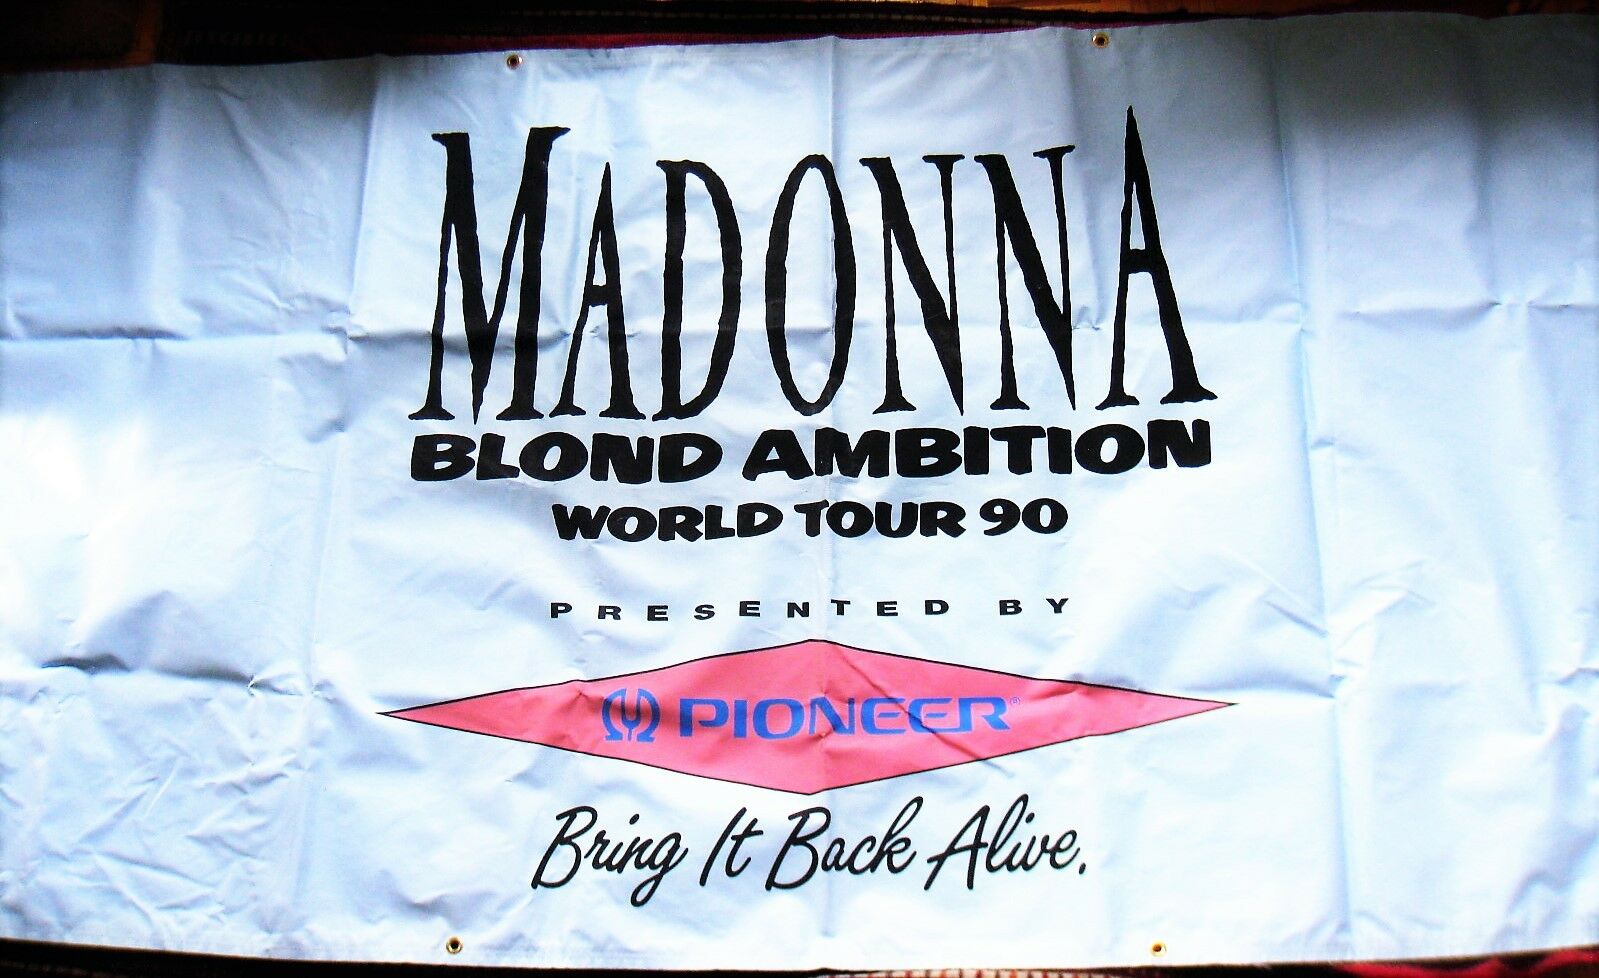 Madonna Massive Blond Ambition Tour Concert Banner La Venue Promo 4 Ft X 8 Ft Lp